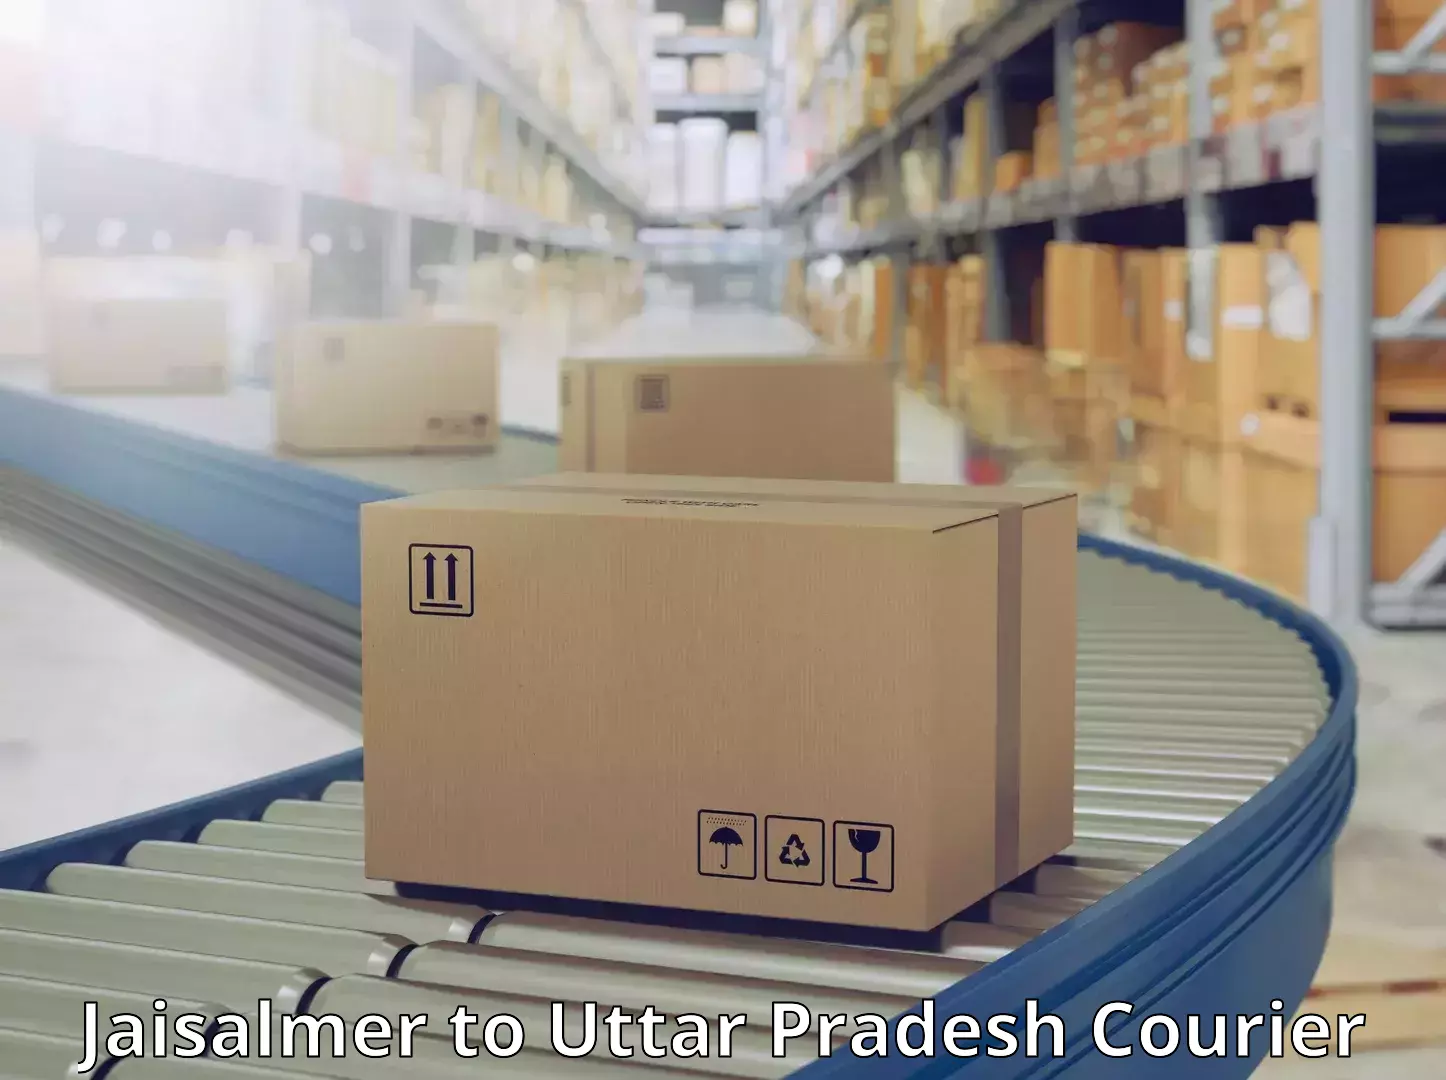 Urgent courier needs Jaisalmer to Sahatwar